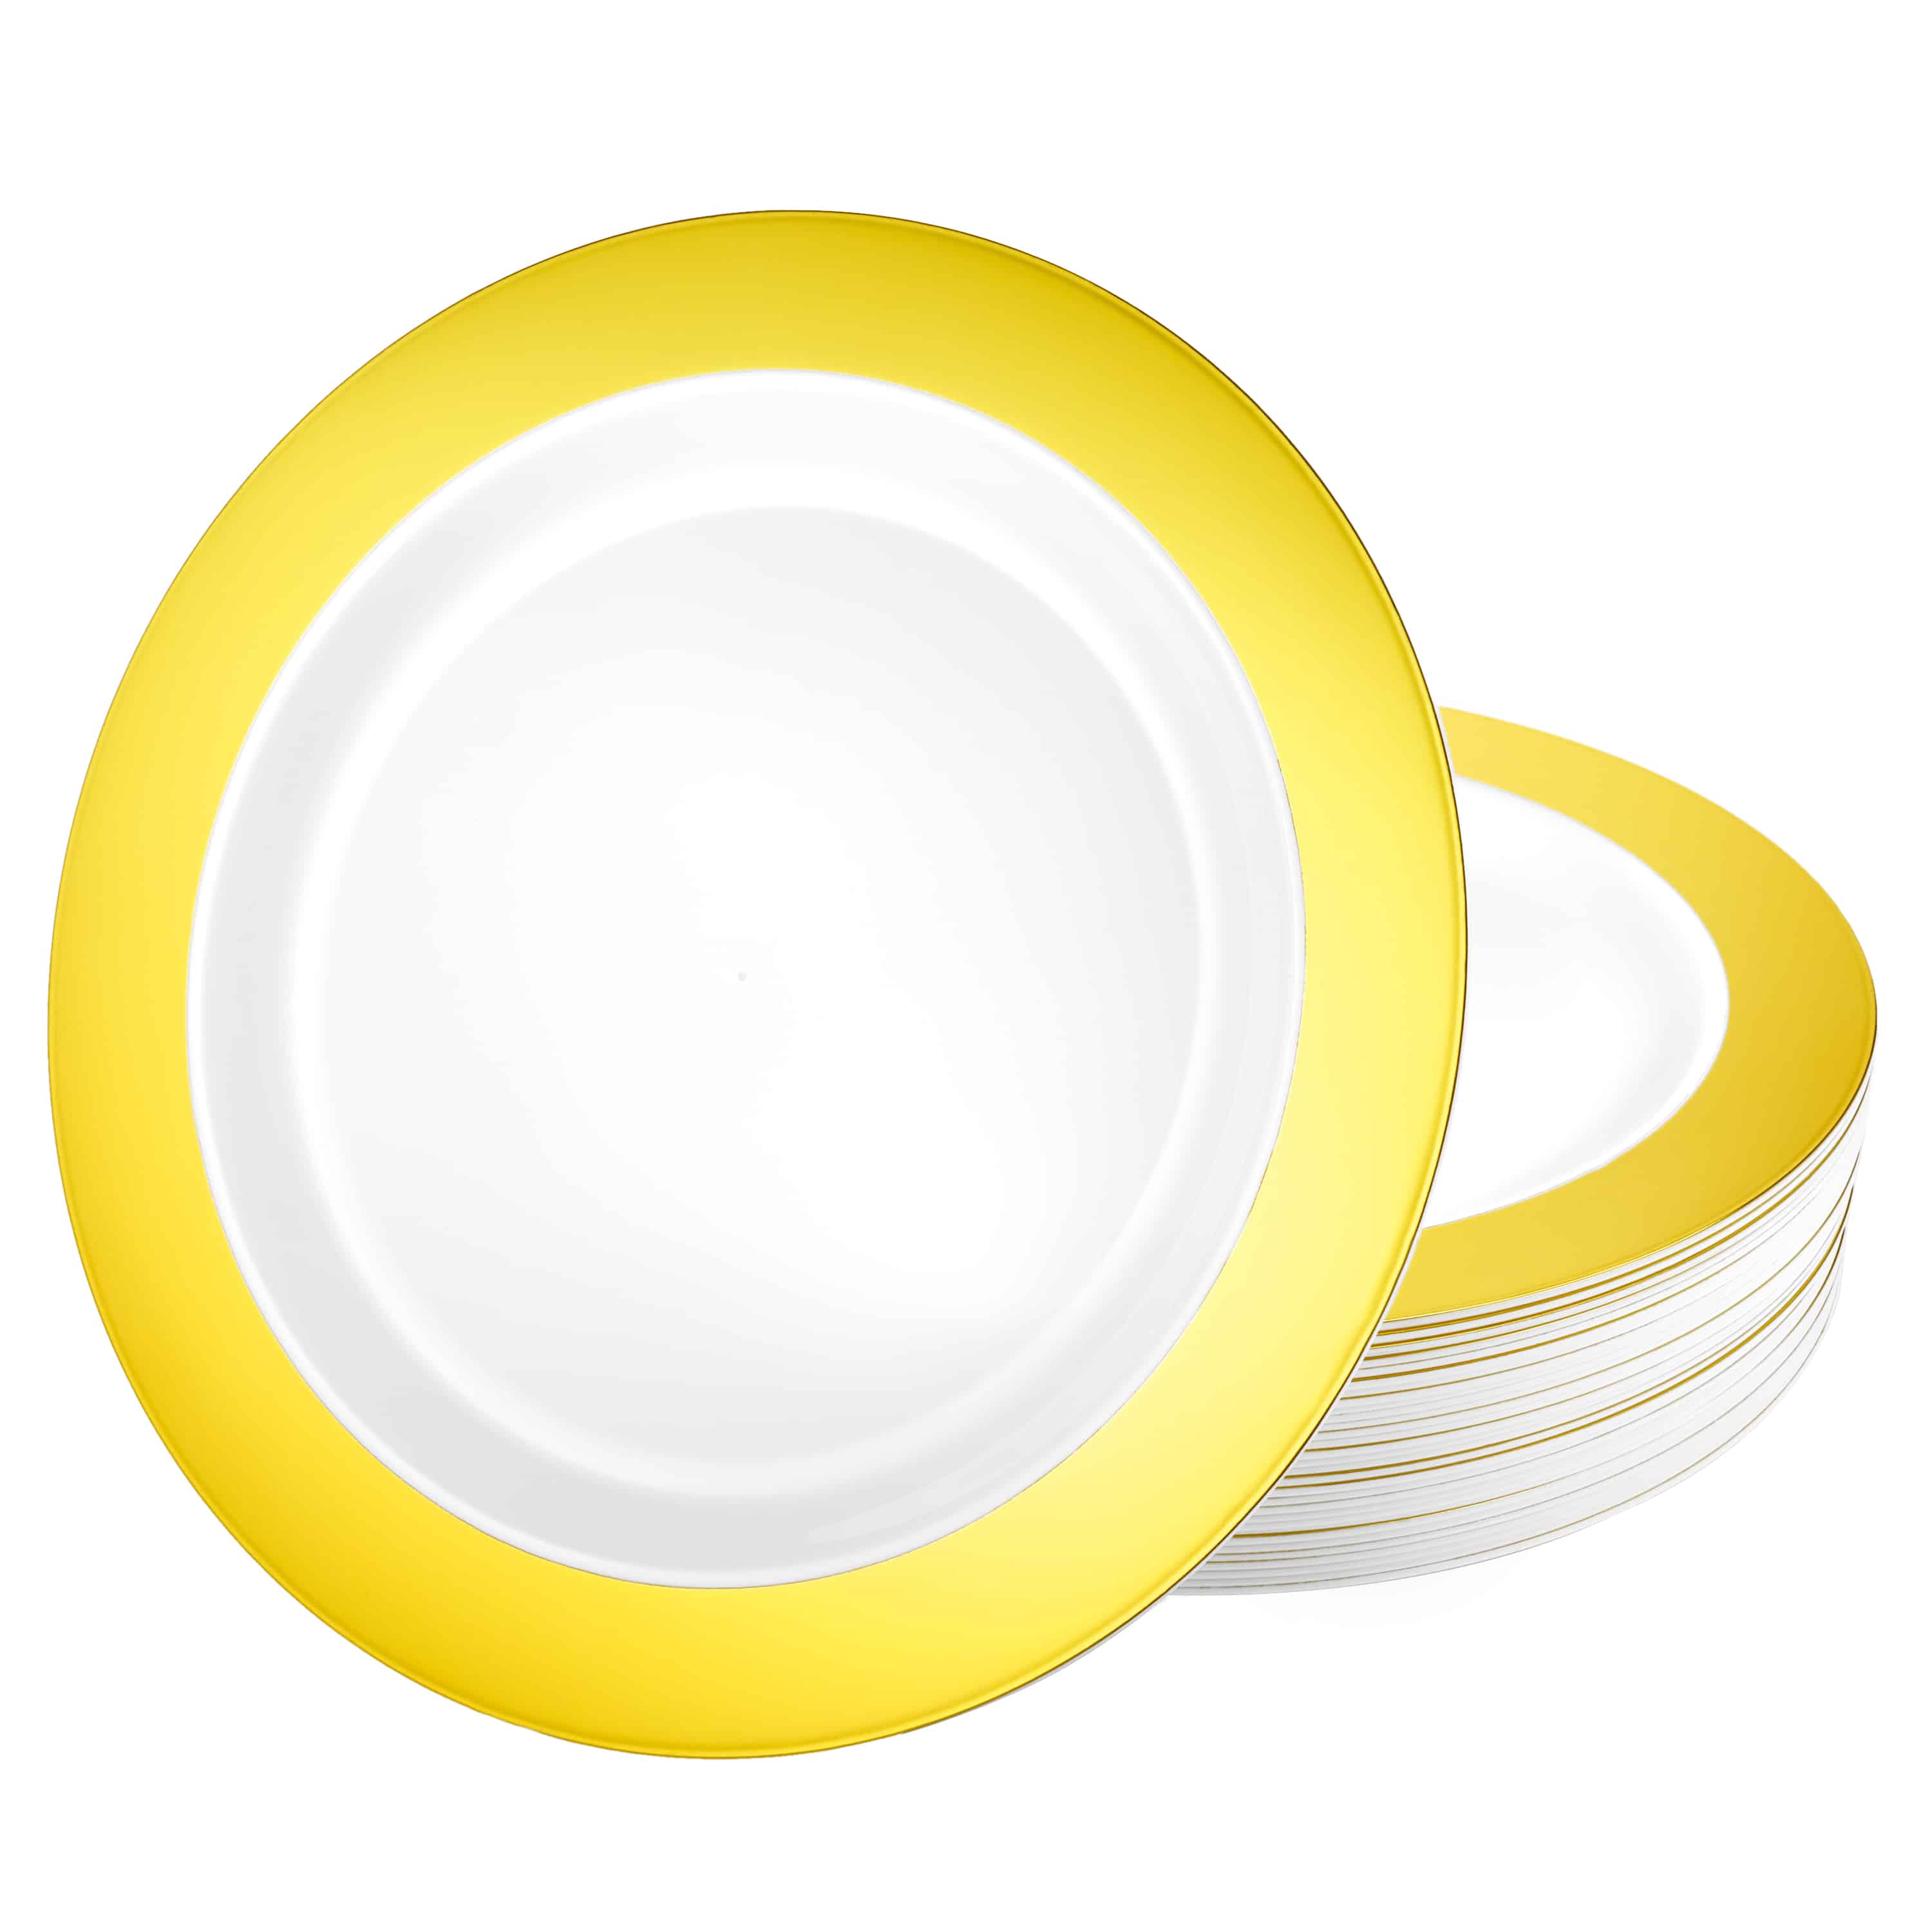 Magnificence Gold Rim Premium Plastic Round Dinnerware